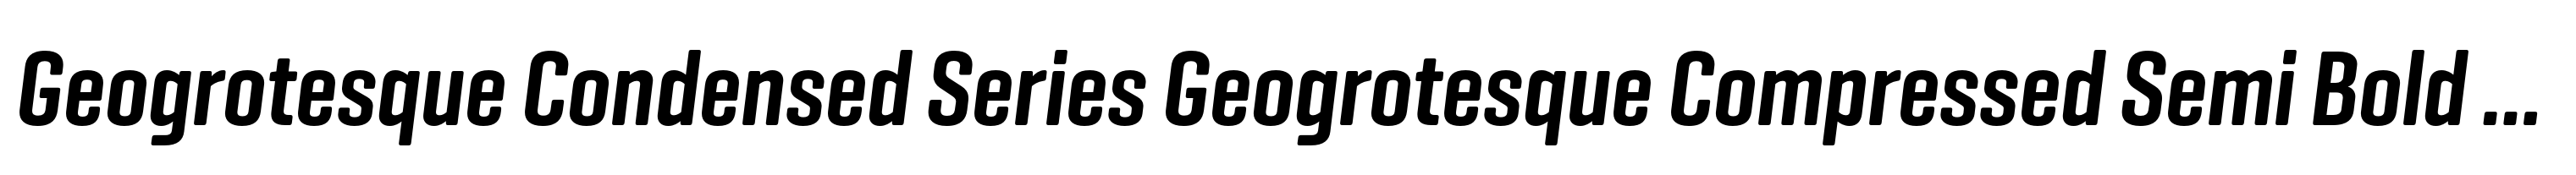 Geogrotesque Condensed Series Geogrotesque Compressed Semi Bold Italic